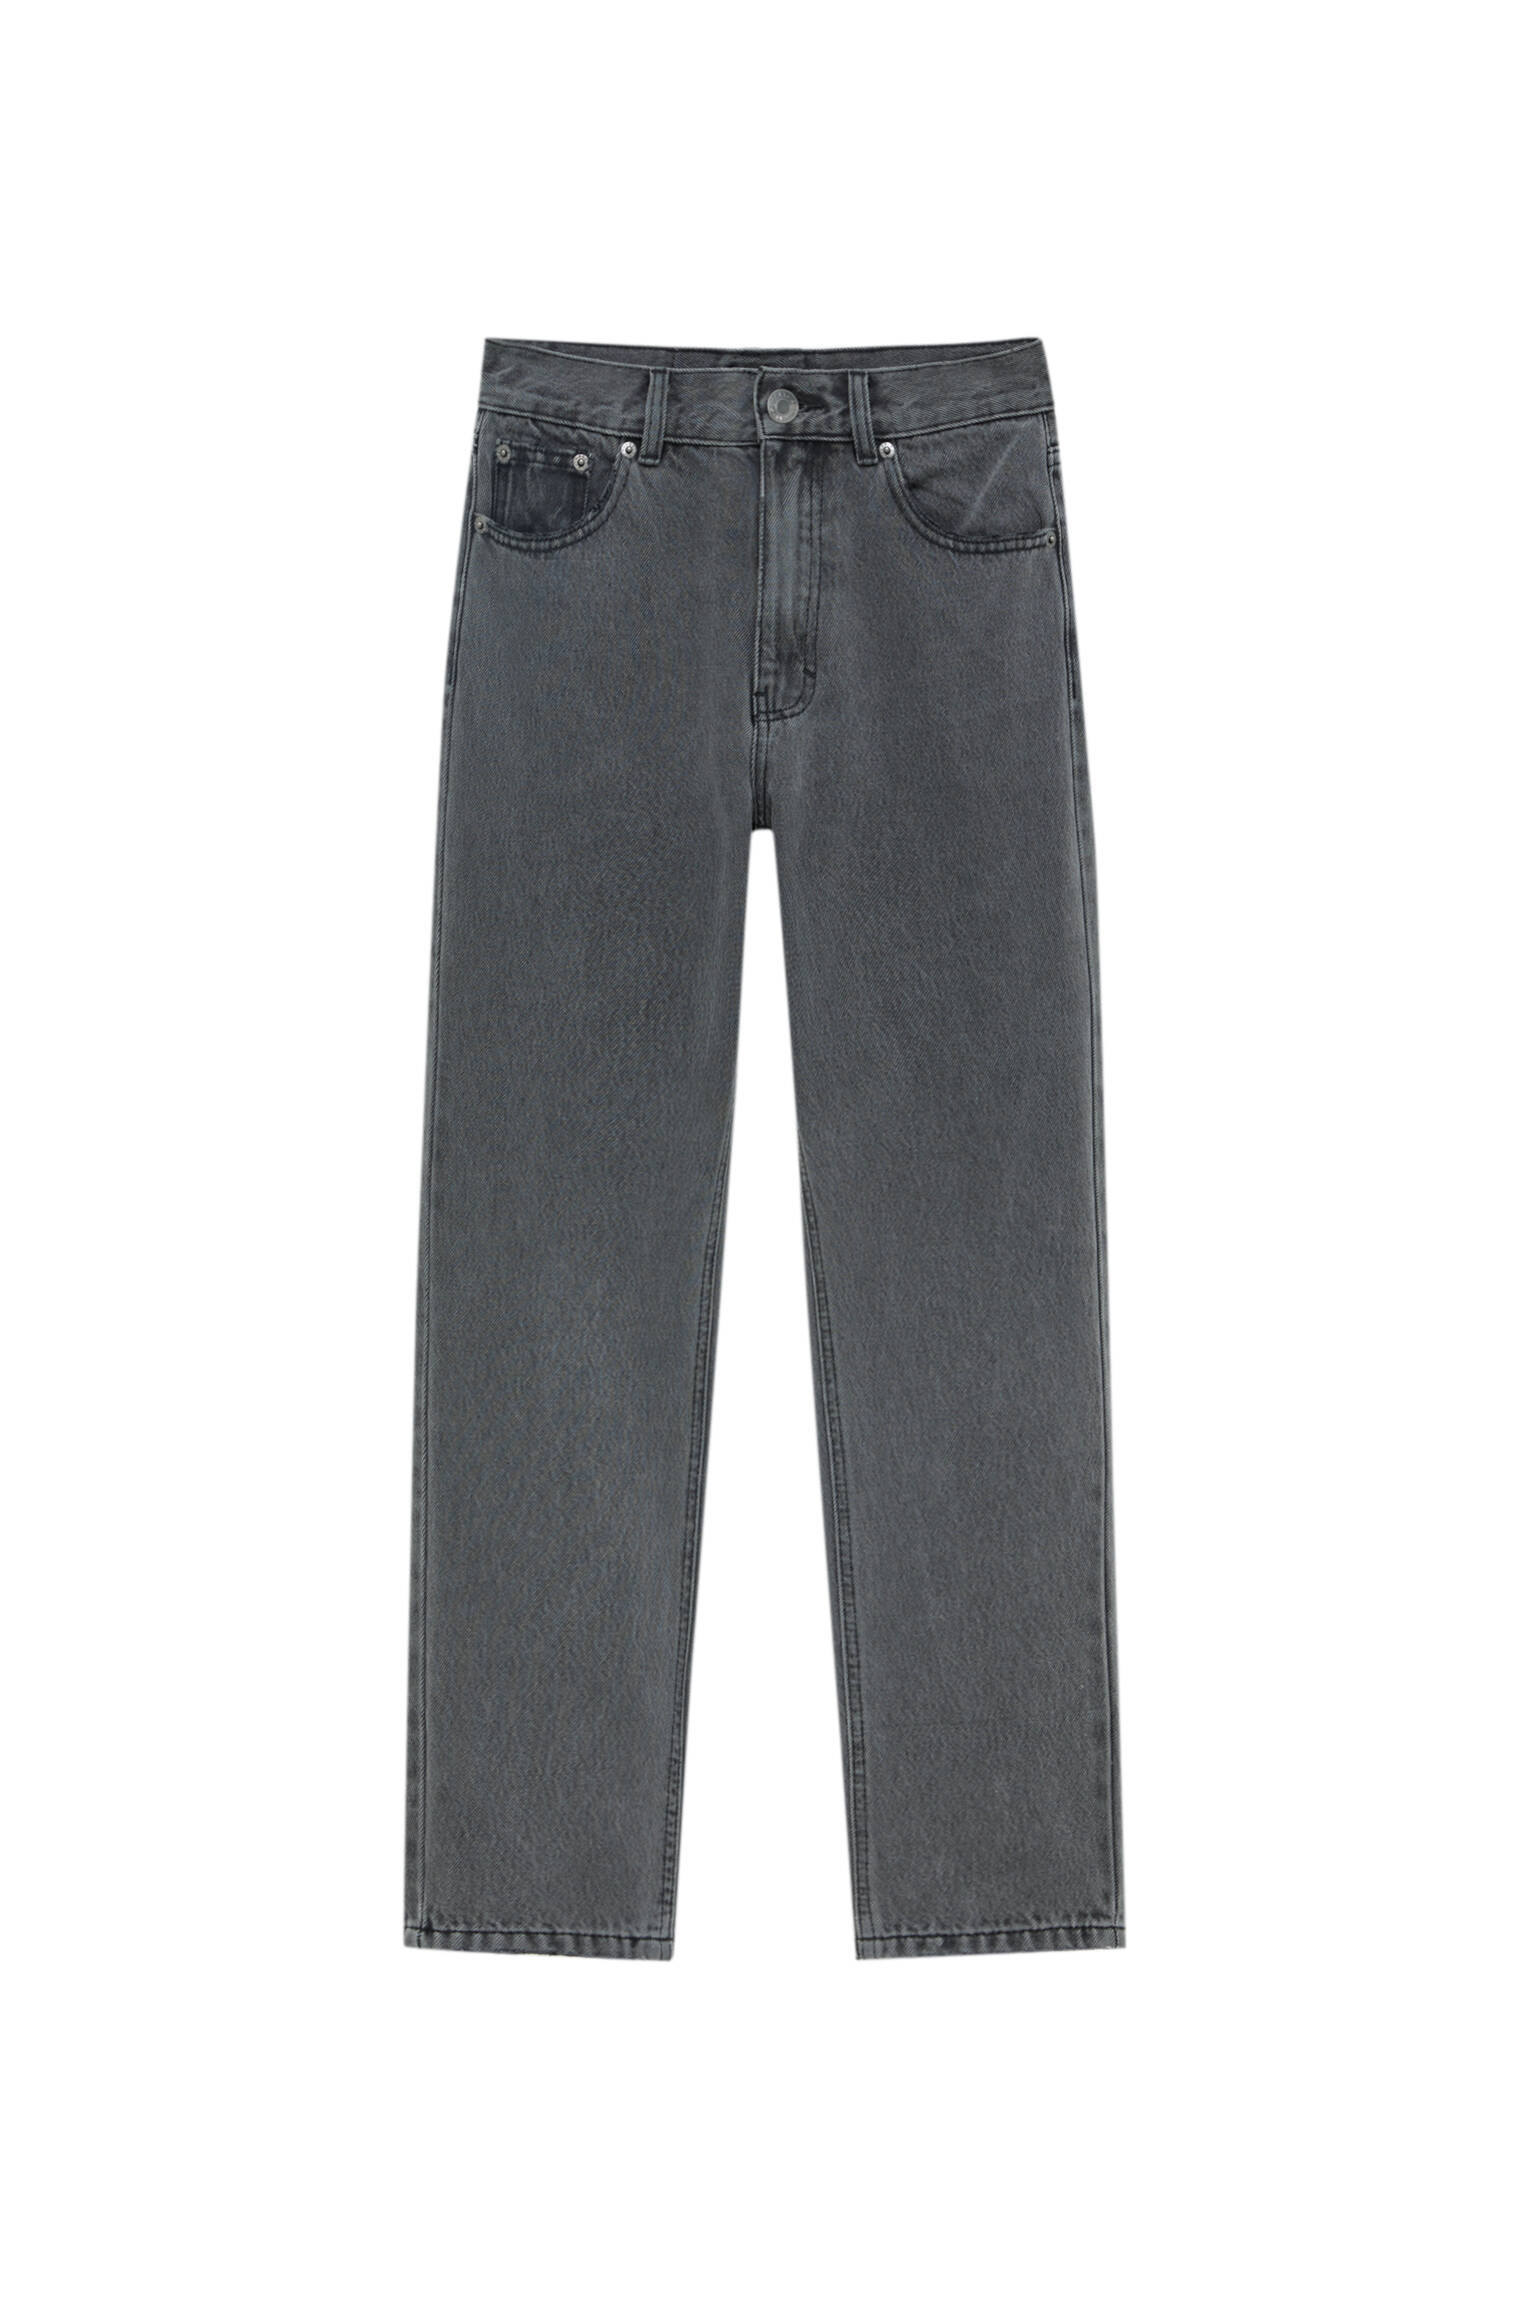 Базовые джинсы mom fit - органический хлопок (не менее 50%) Серый Pull & Bear